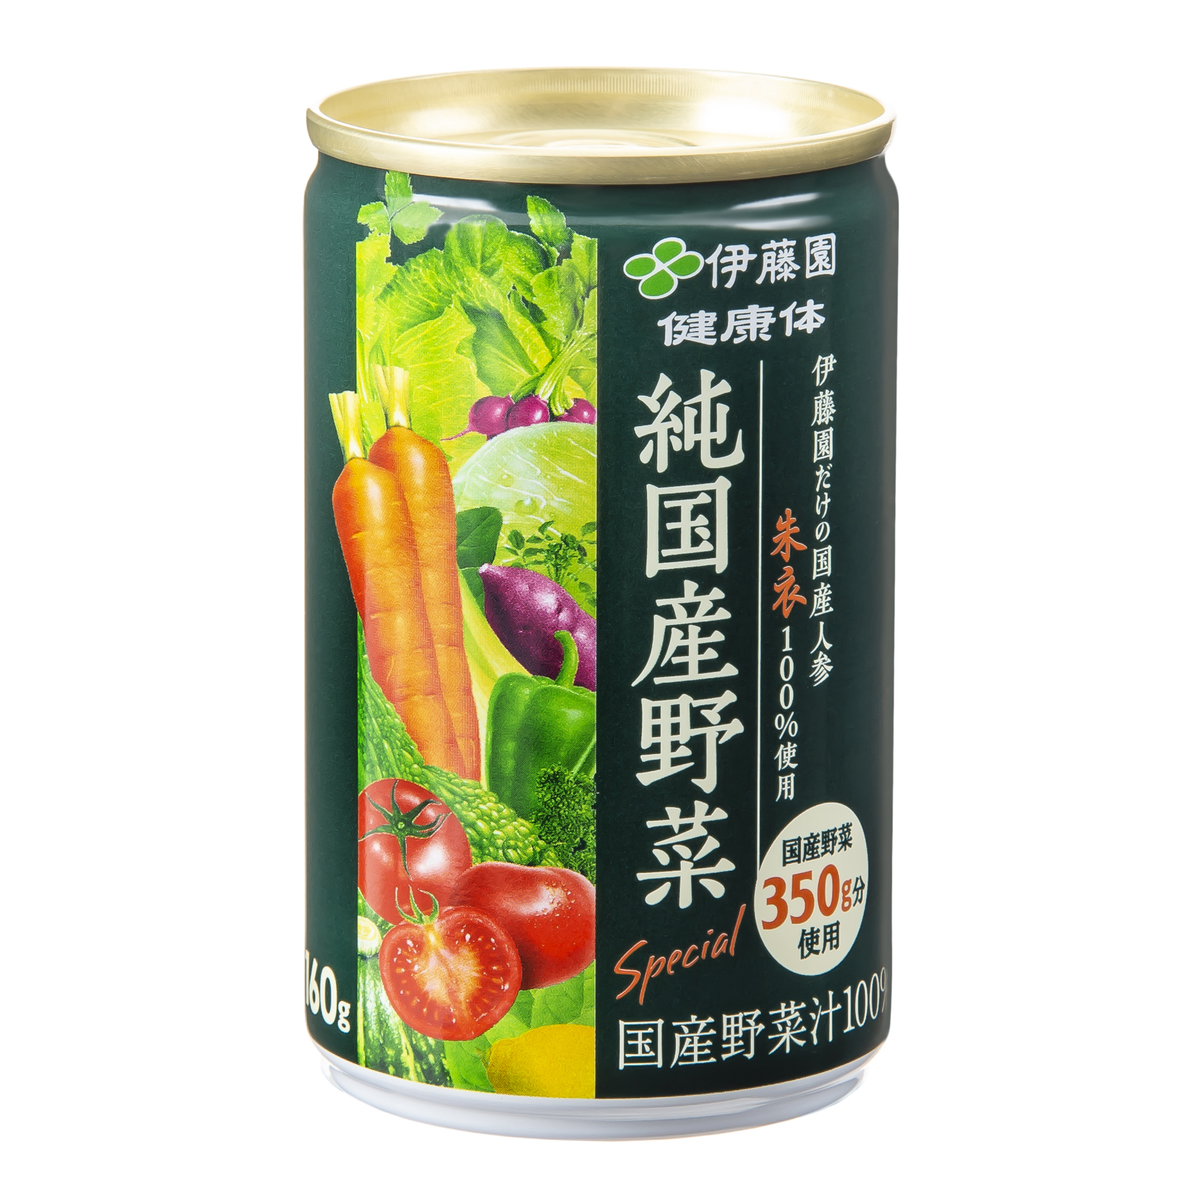 伊藤園健康体 1日分の純国産野菜160g×60本 - QVC.jp